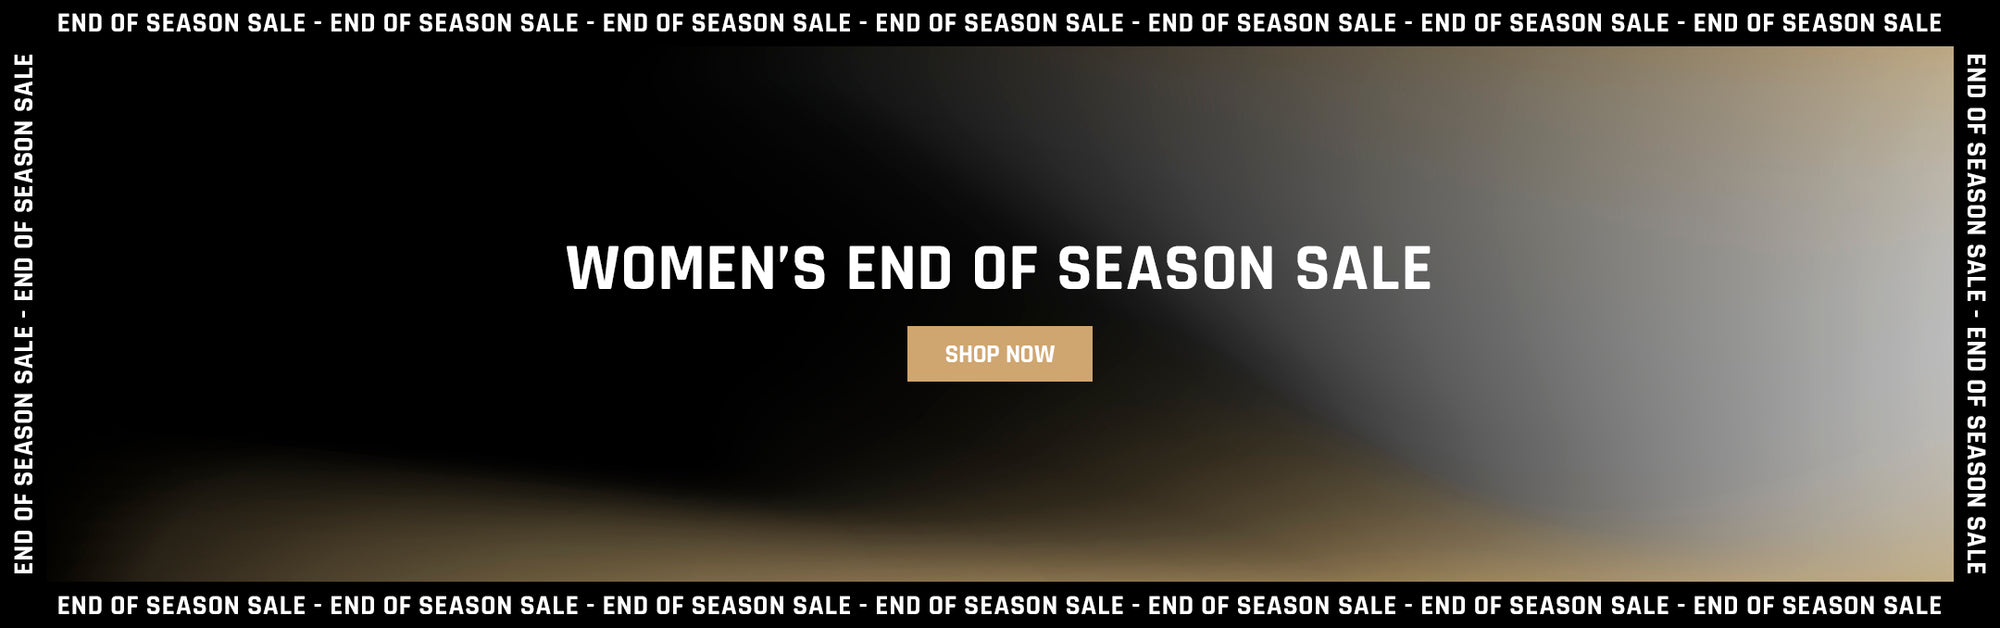 Women's End of Season Sale